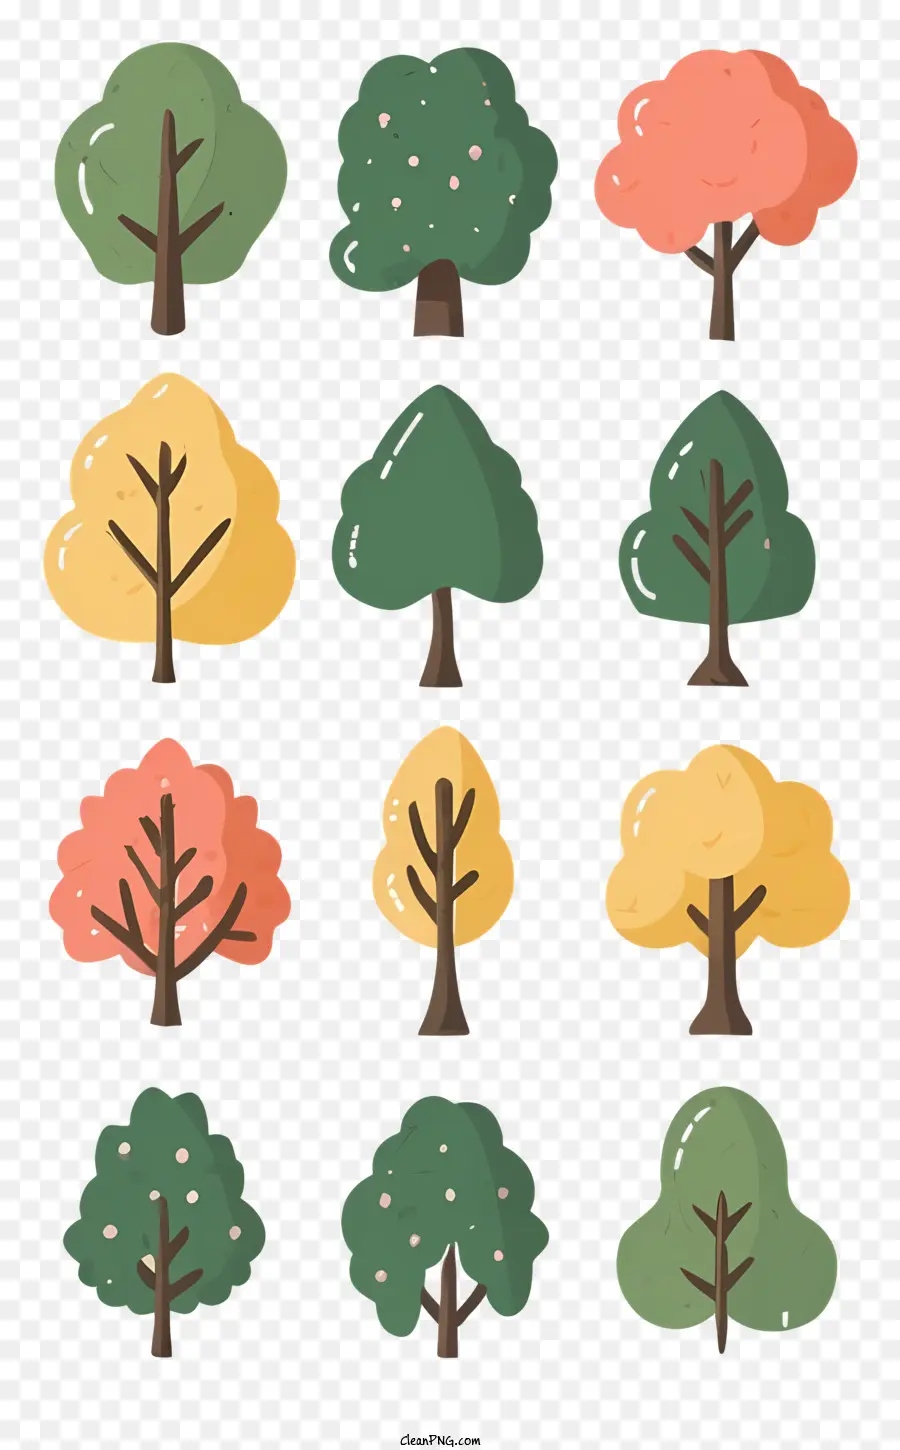 Orange - Bunte Bäume mit verschiedenen Blättern, die für verschiedene Verwendungen geeignet sind